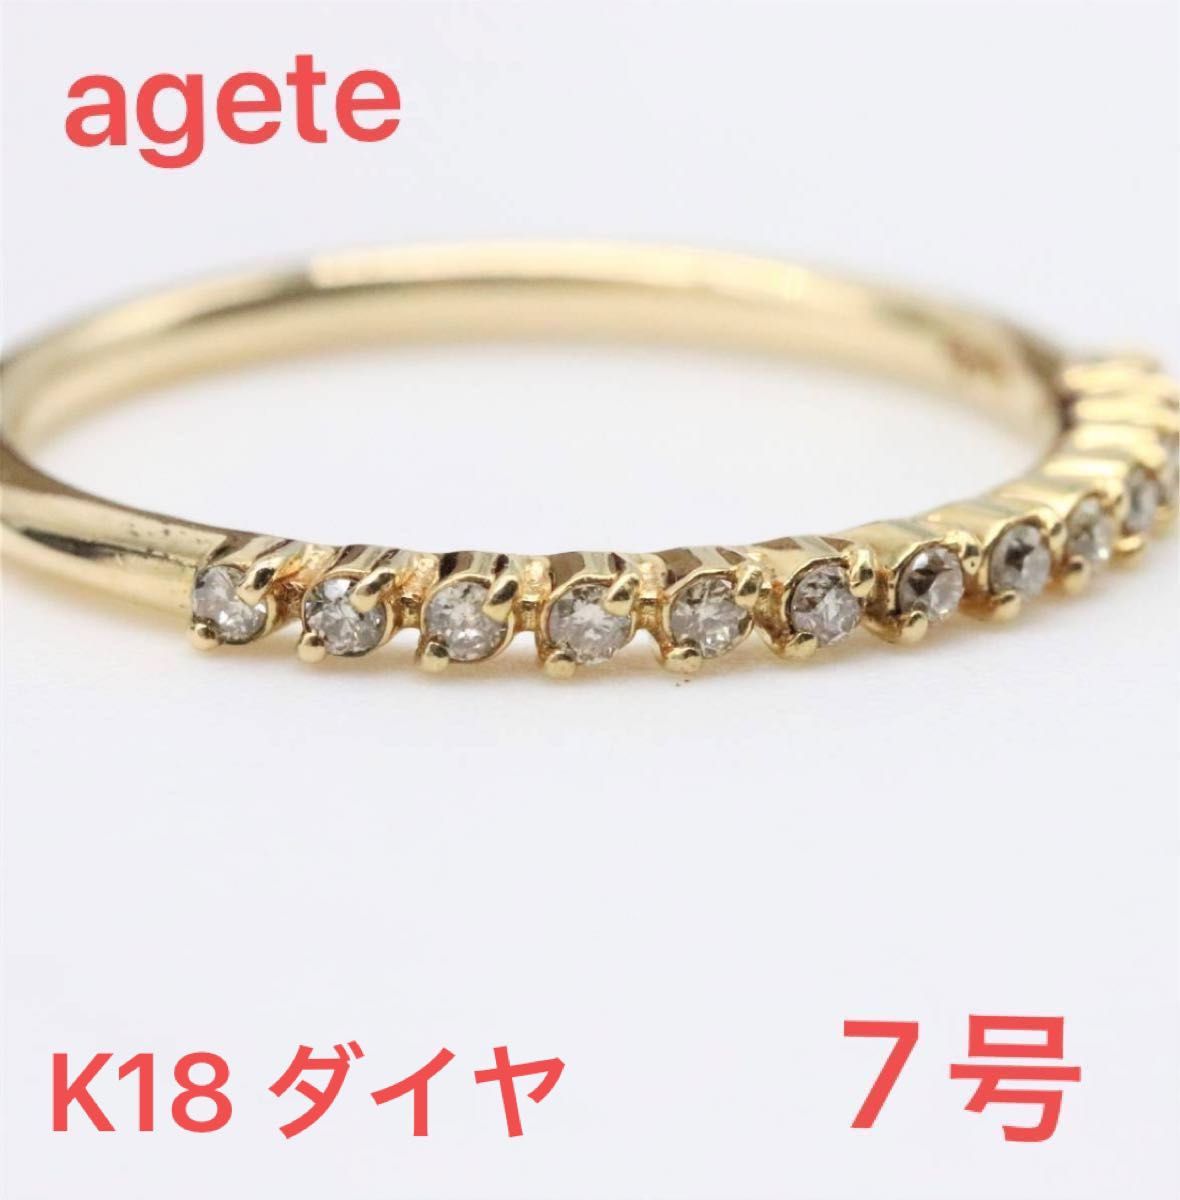 agate k18ダイヤモンドリング 7号 | tspea.org